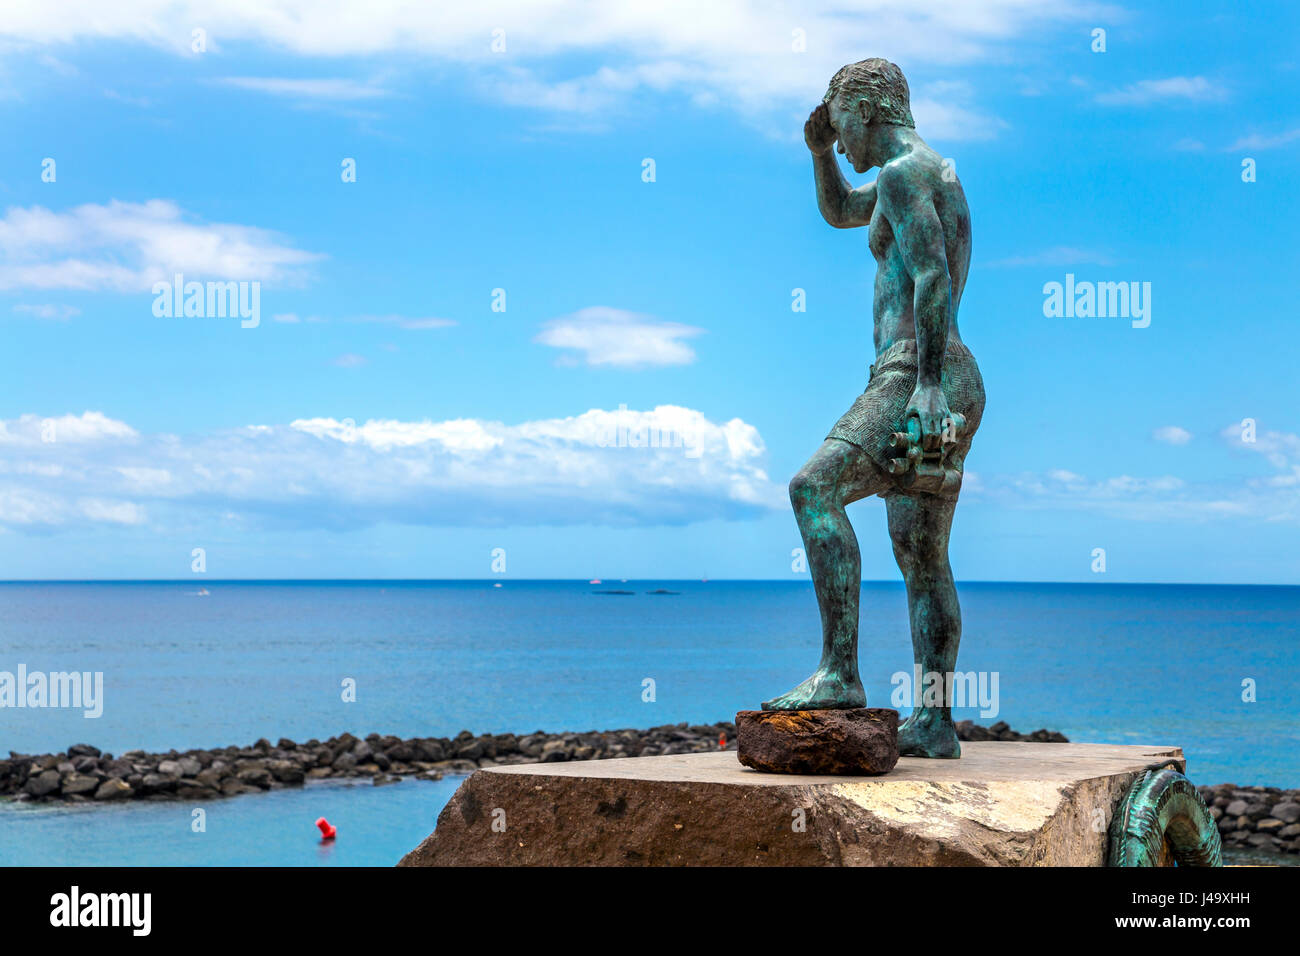 Sculpture de Javier Perez Ramos, Tenerife, Espagne Banque D'Images